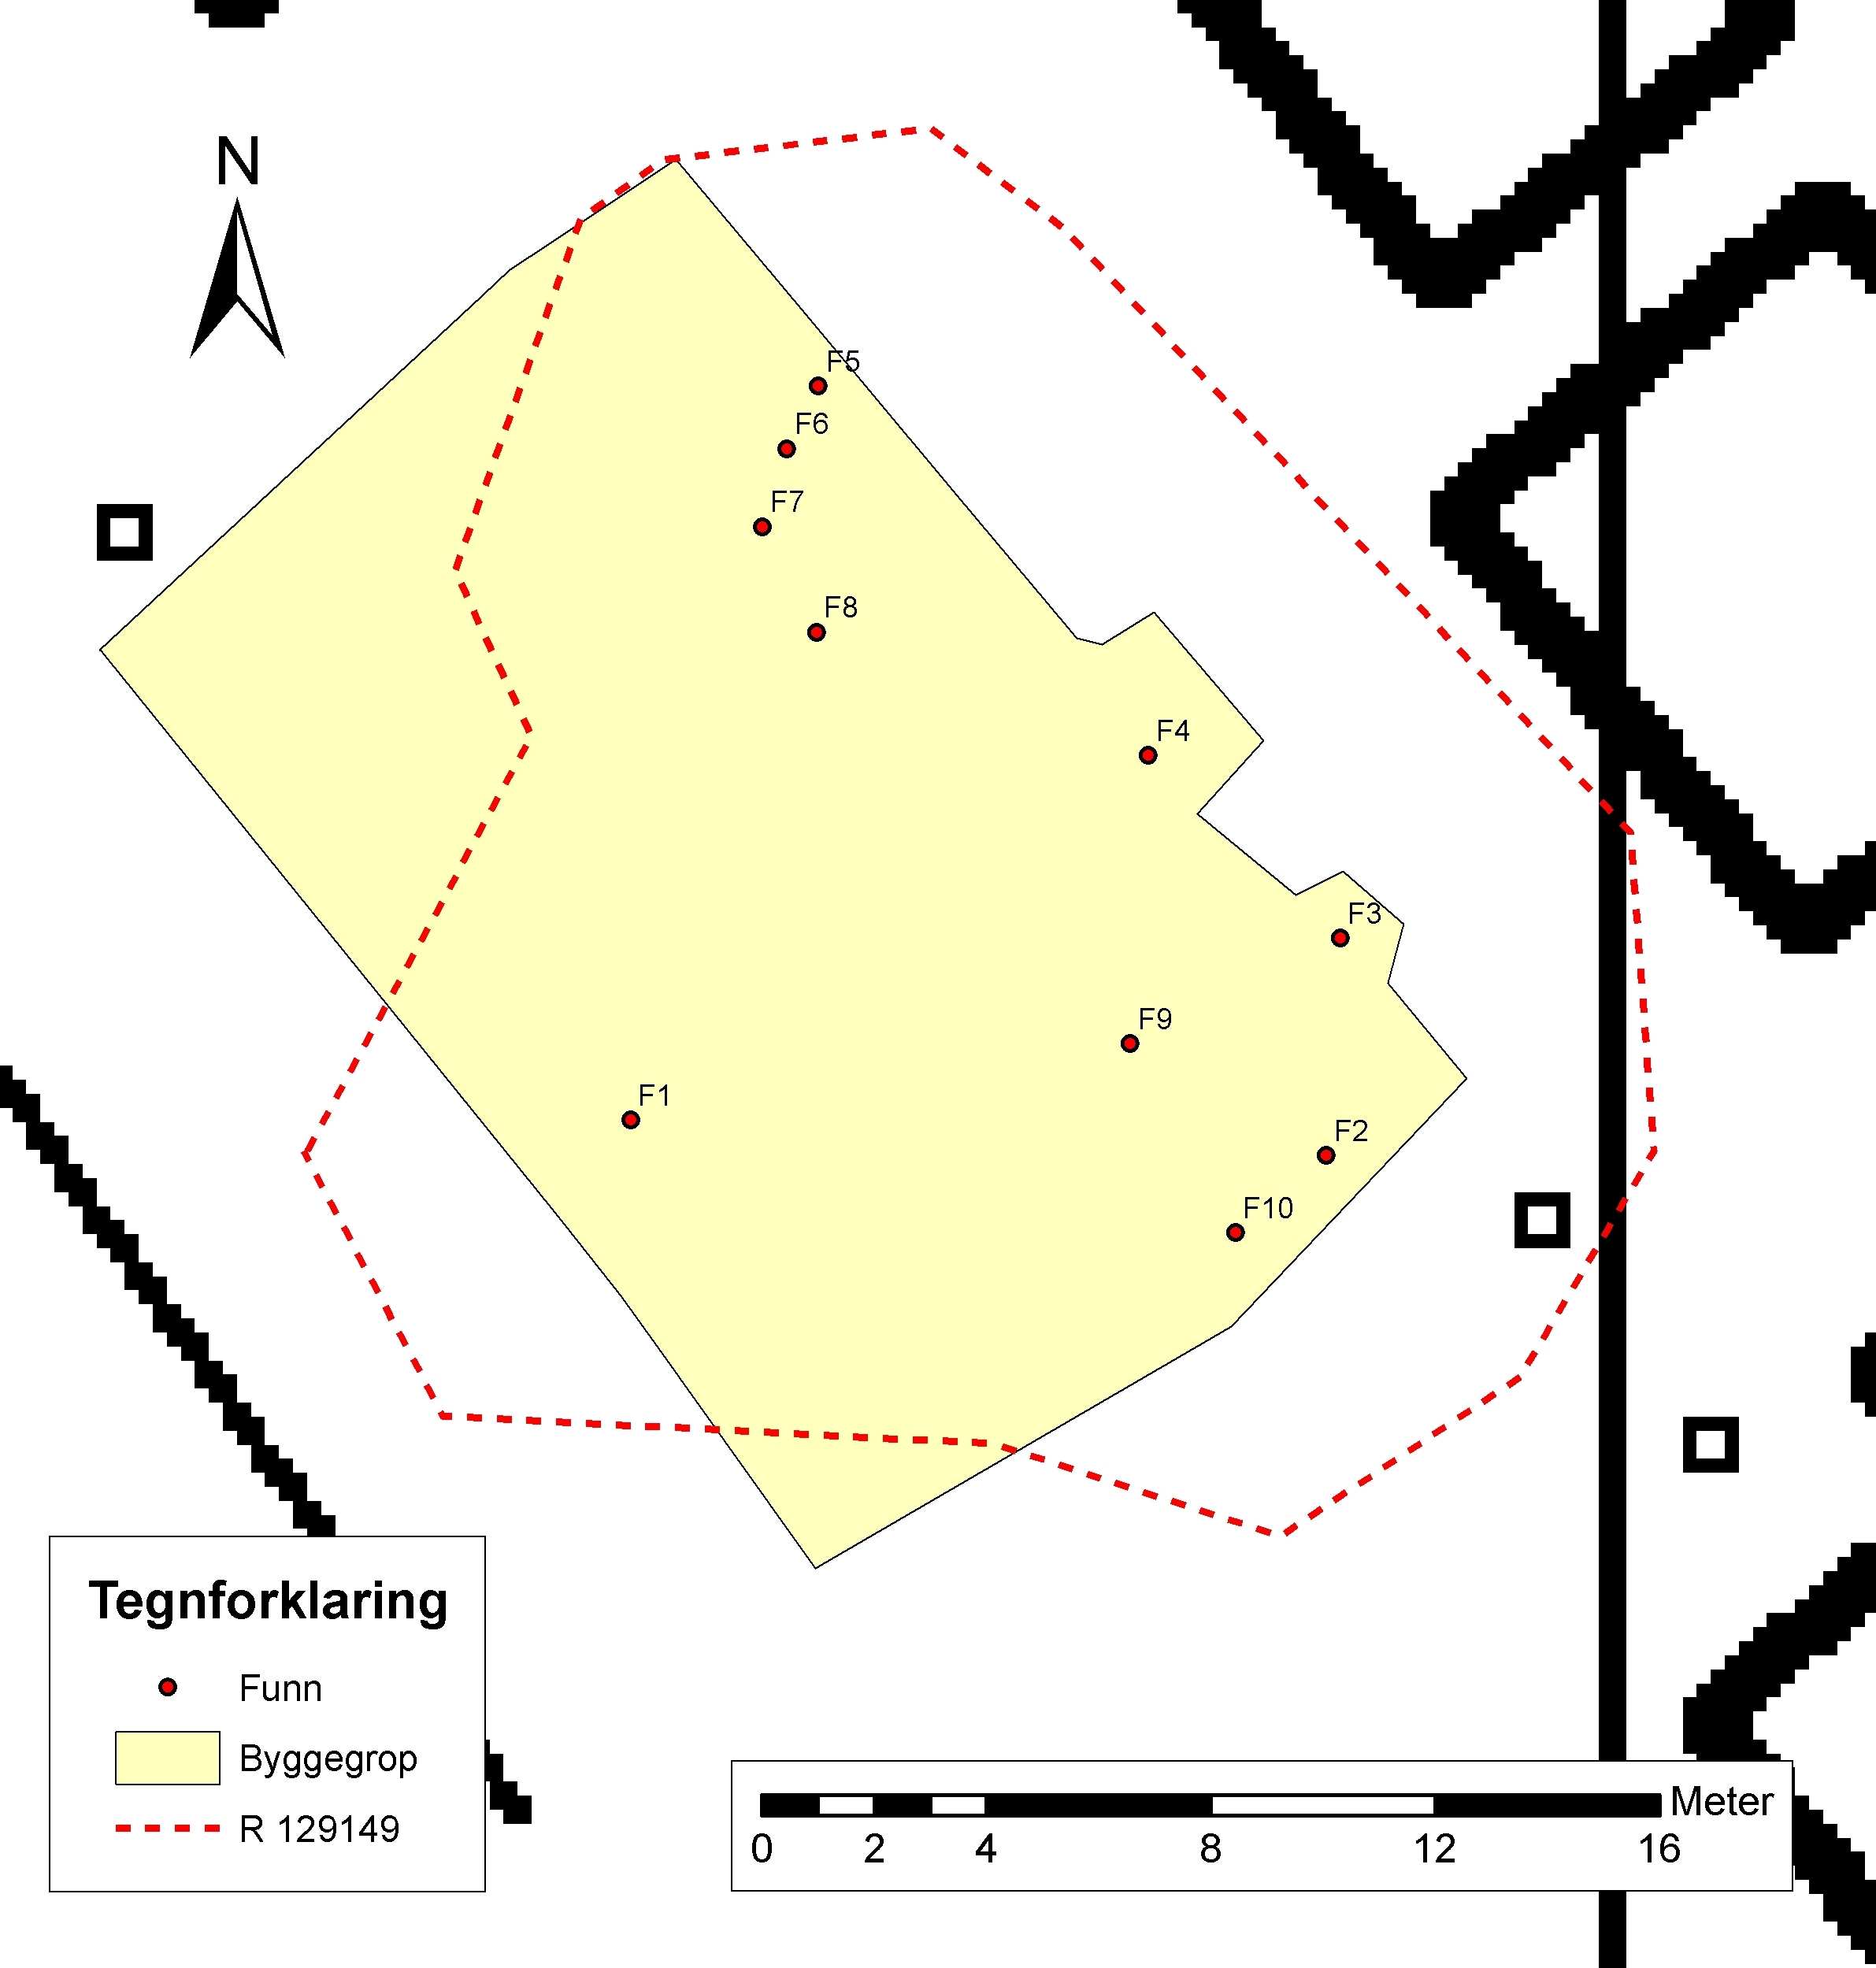 Kart 2: Oversikt over planområdet som i sin helhet er avdekket (byggegrop). Funn og fornminneavgrensning (R 129149) markert. ØK-kart CS047-5-4.